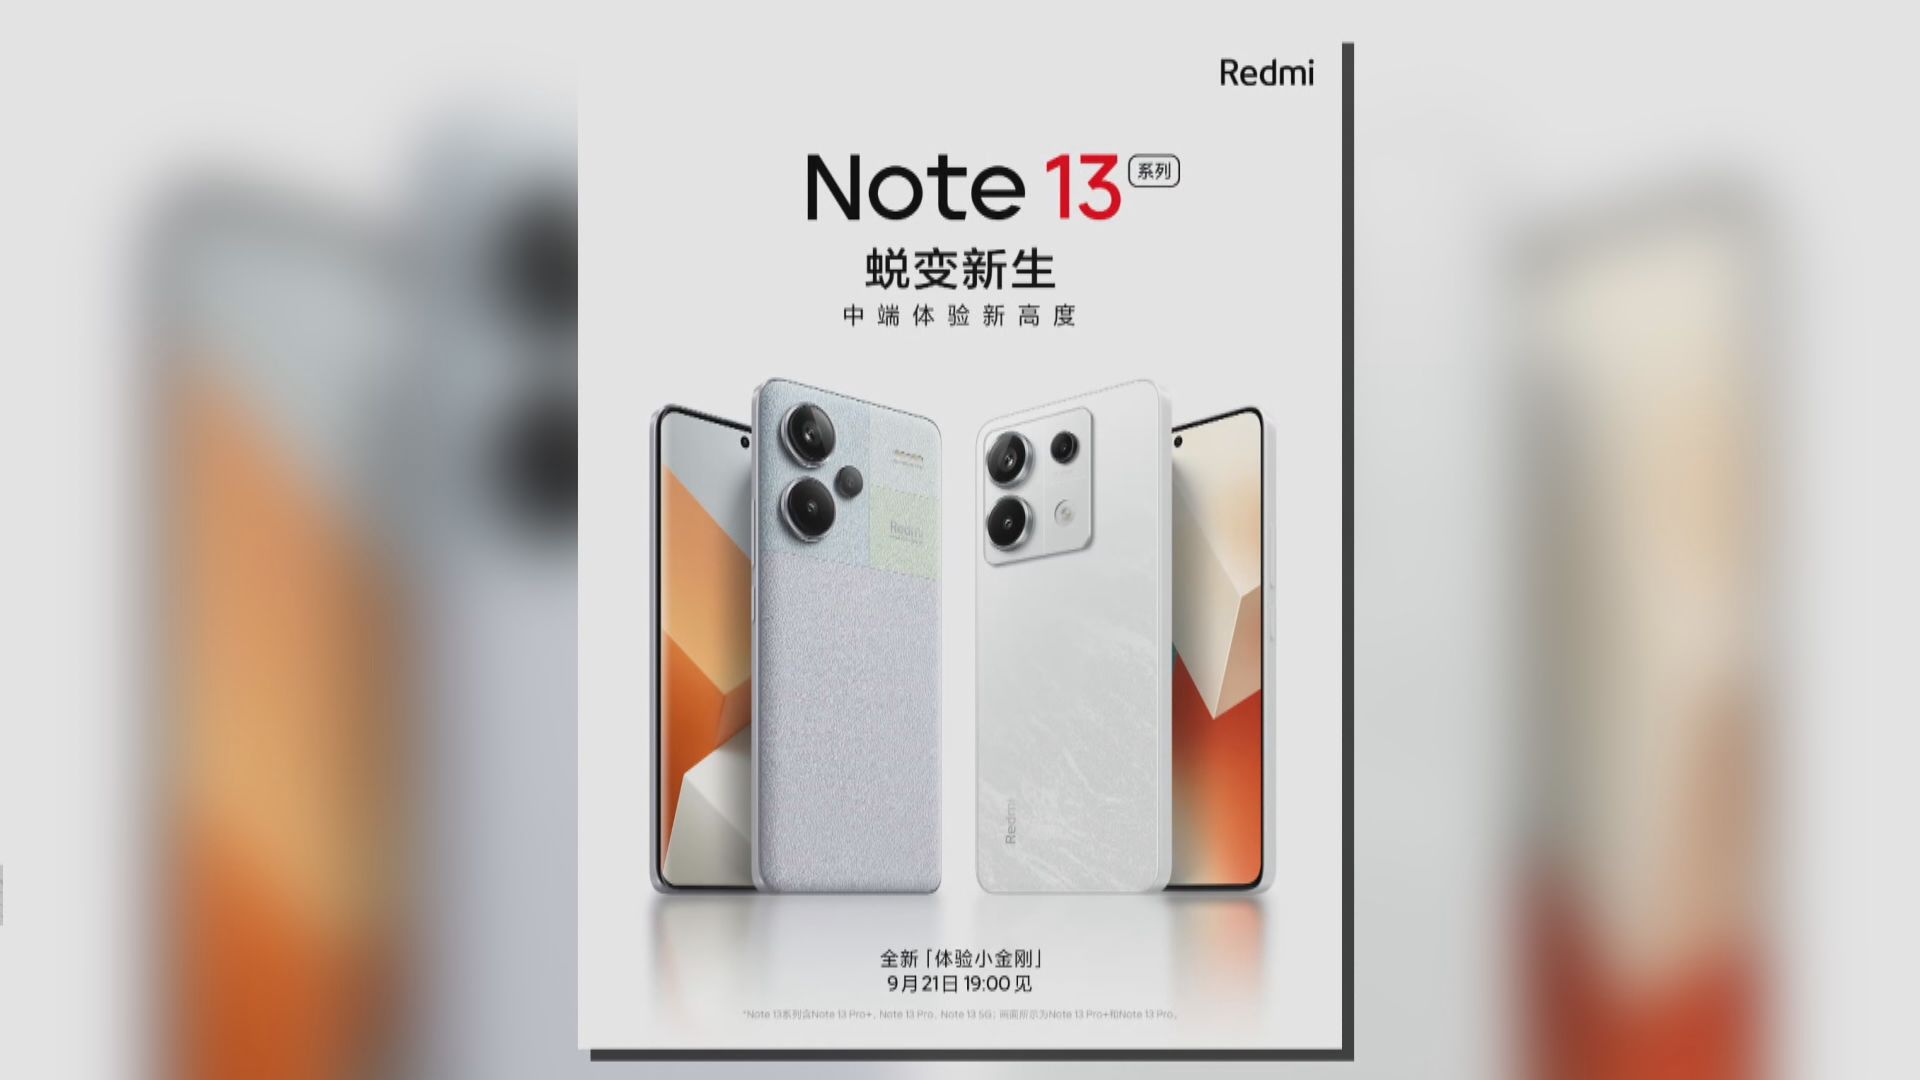 【新手機混戰】小米Redmi Note 13系列9‧21亮相